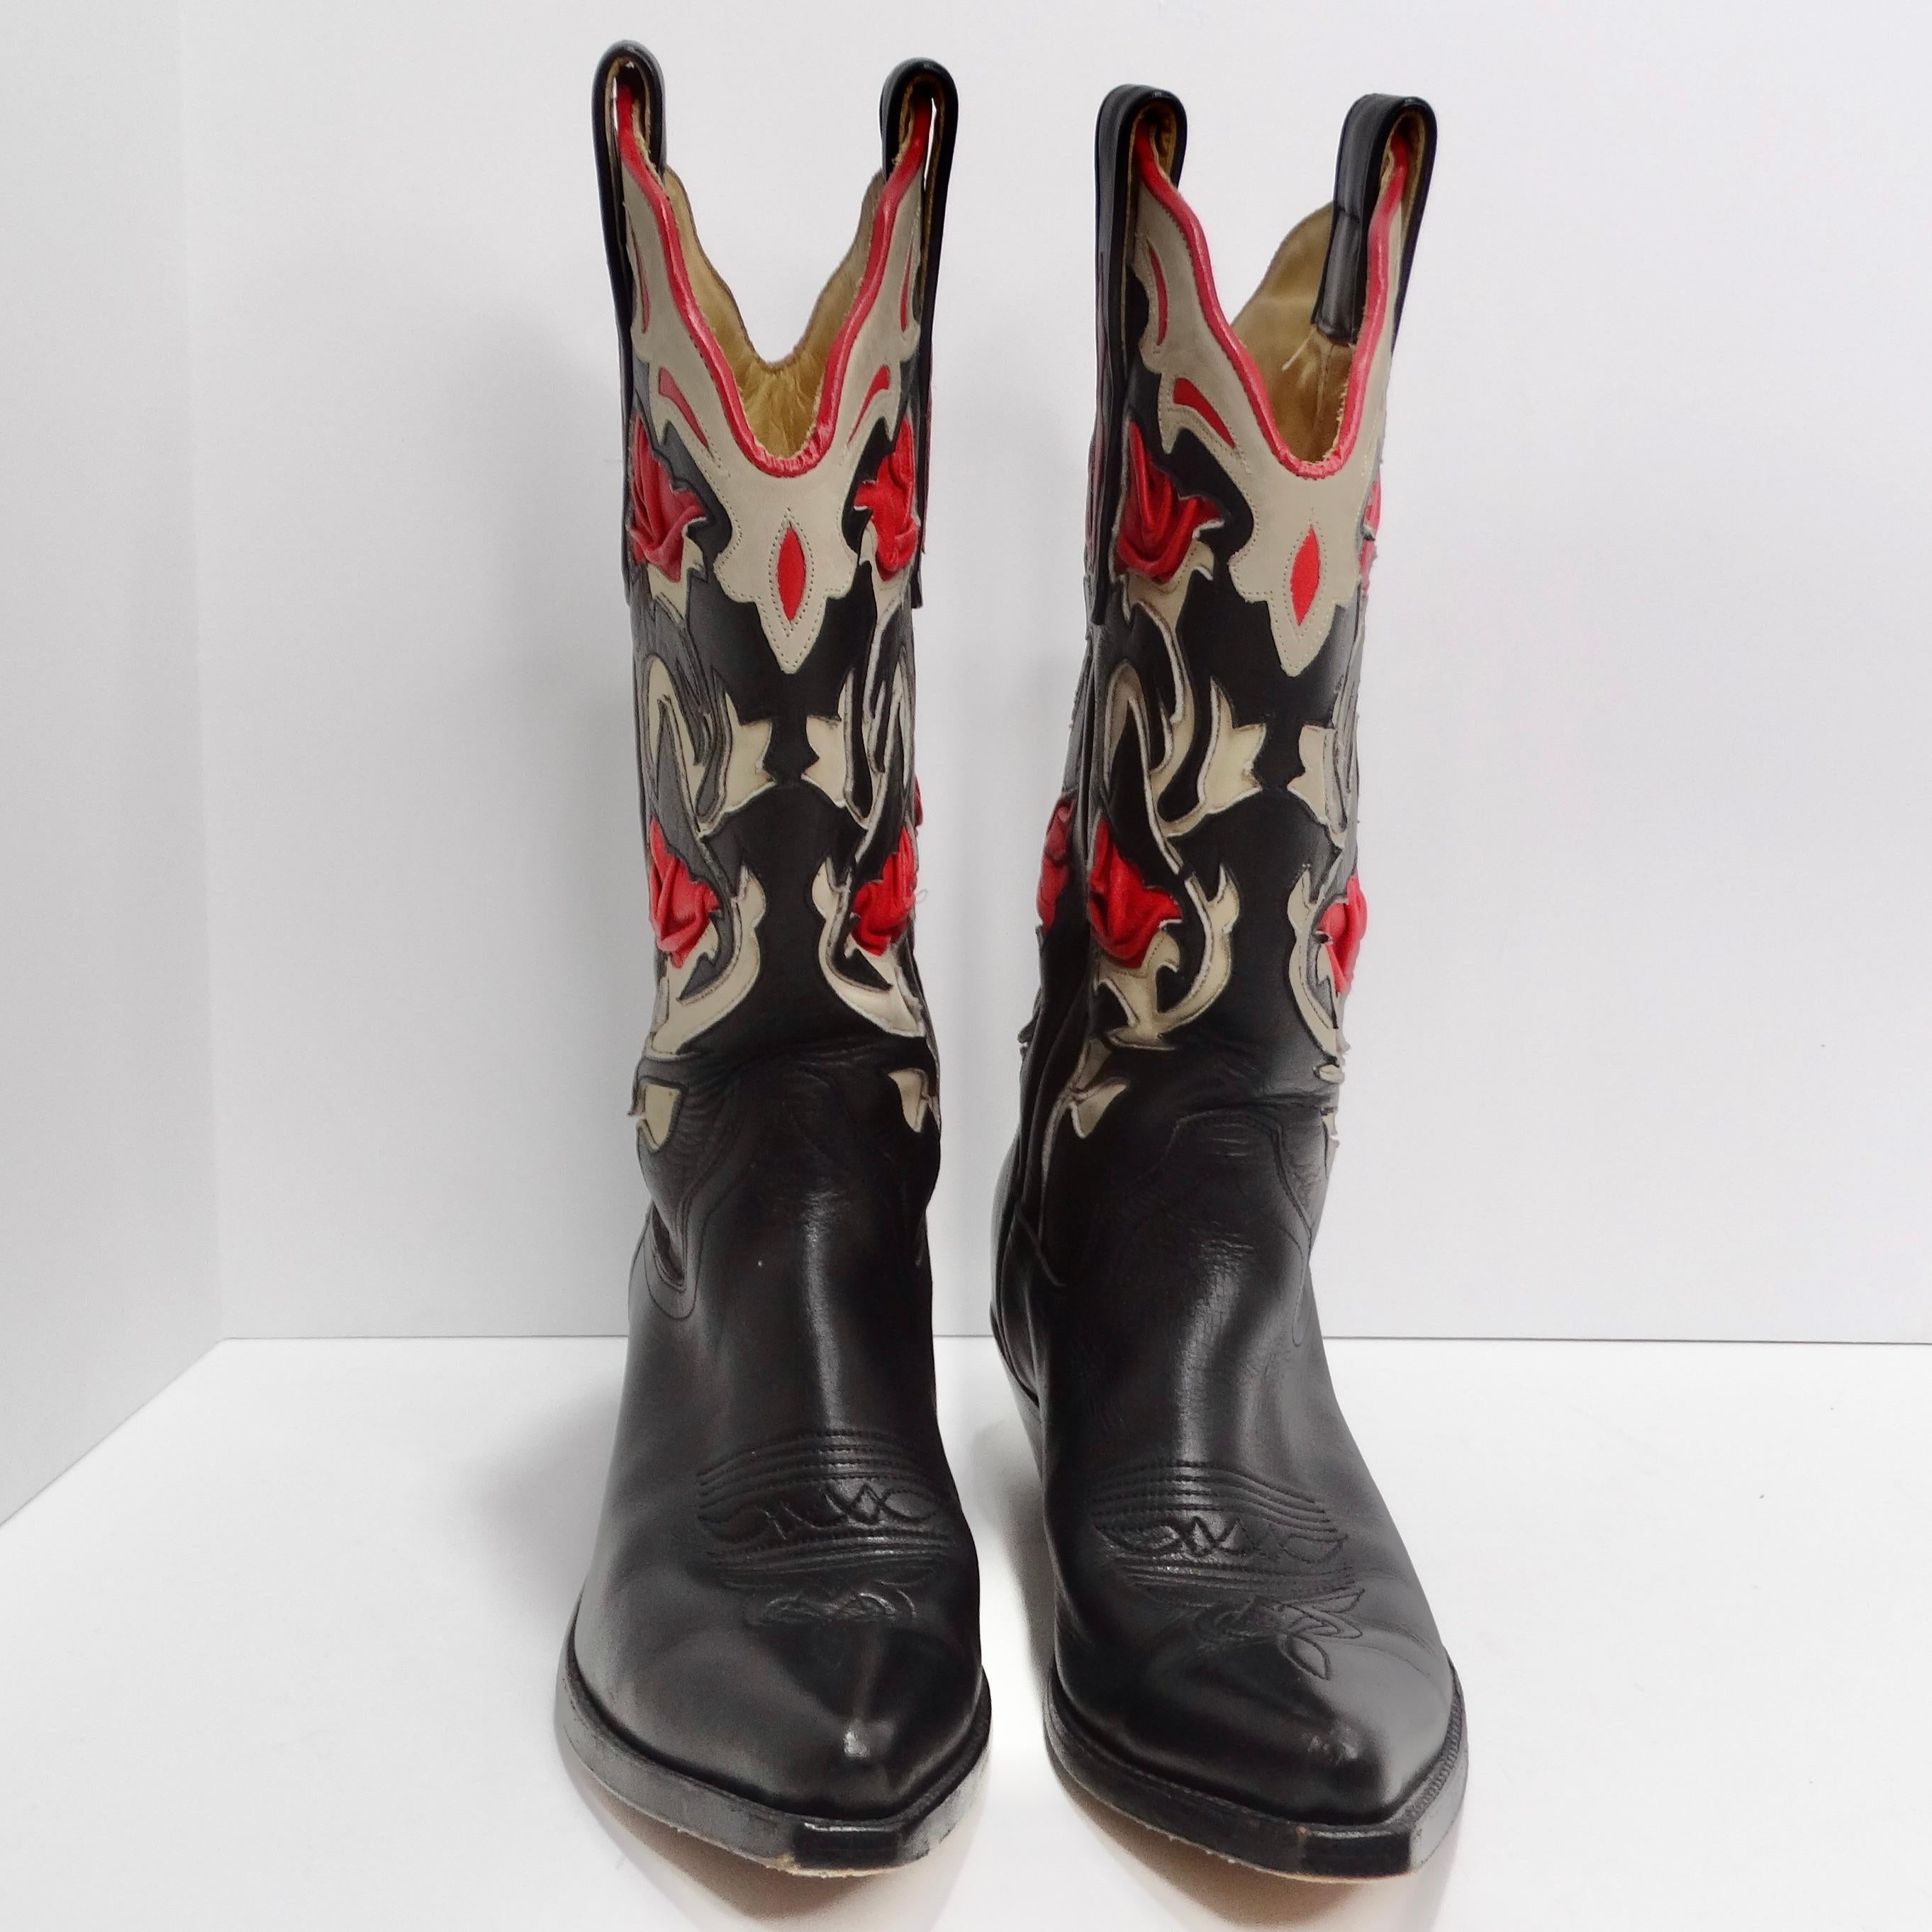 Les bottes de cow-boy Tony Mora en cuir noir et rouge sont l'incarnation du style western classique avec une touche de modernité. Ces bottes de cow-boy exquises sont un mélange parfait de tradition et de mode contemporaine, ce qui en fait un